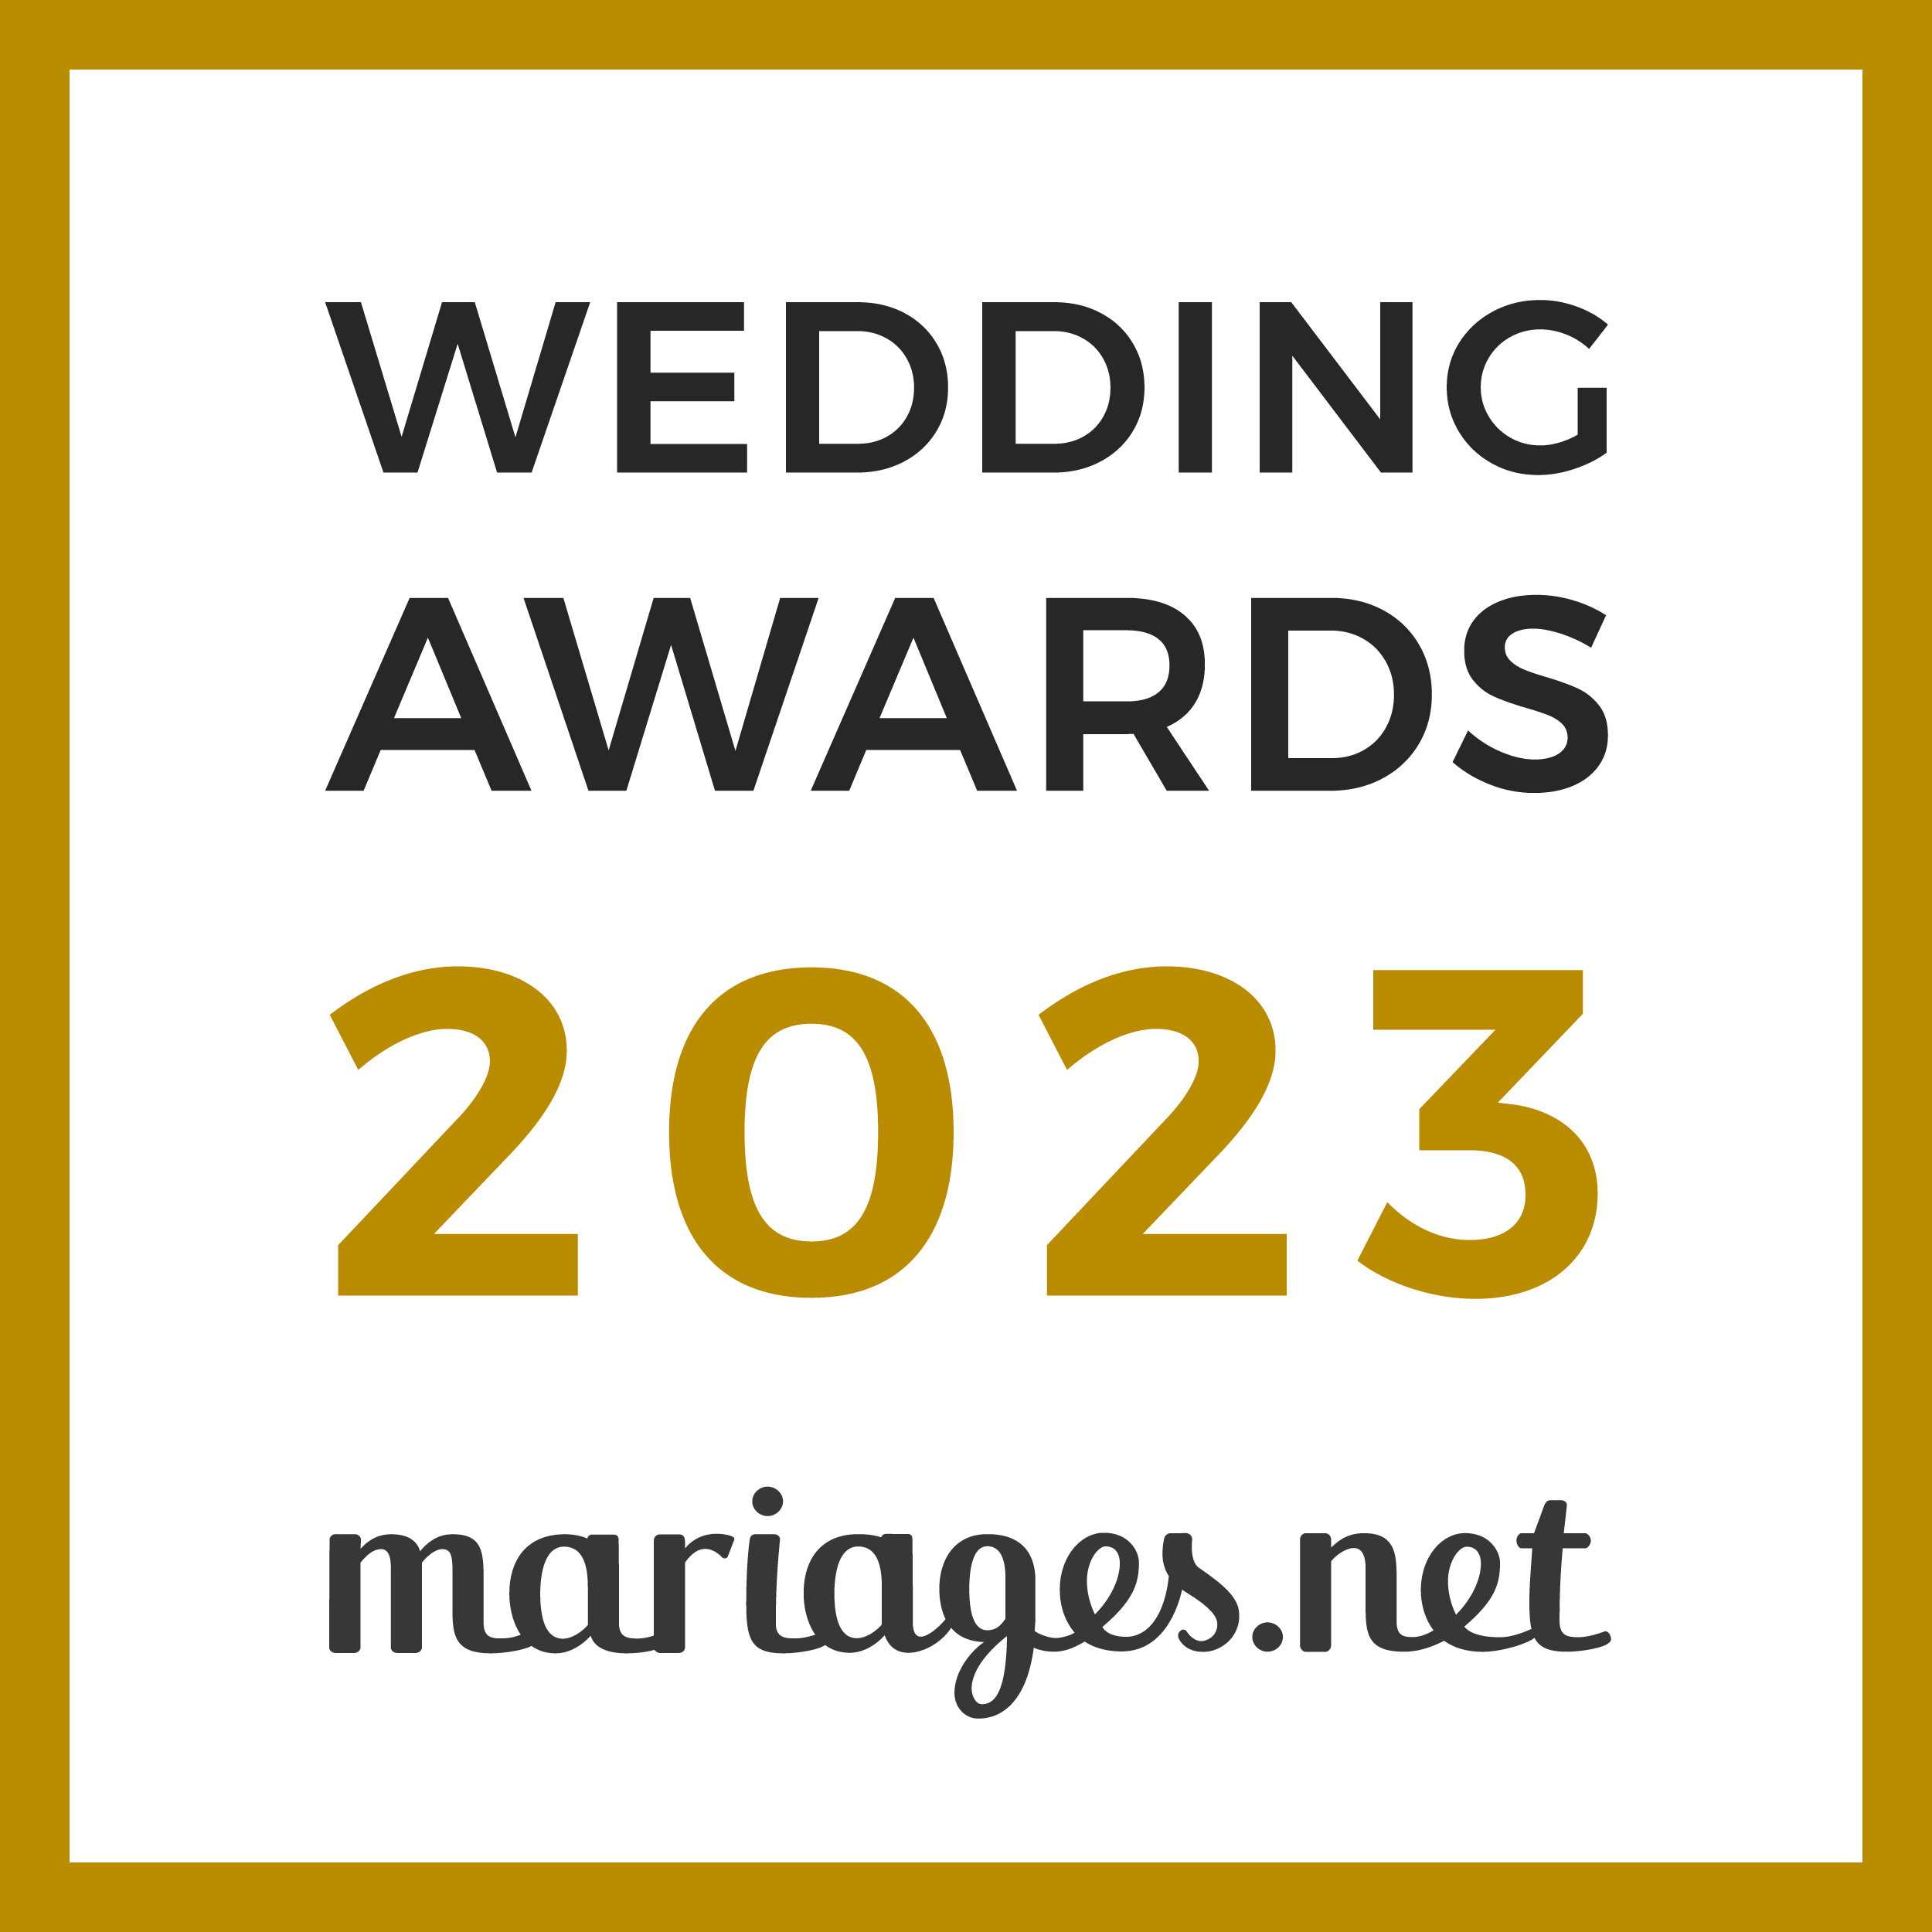 Le Saint-Honoré - Eric Arnaud, gagnant Wedding Awards 2023 Mariages.net